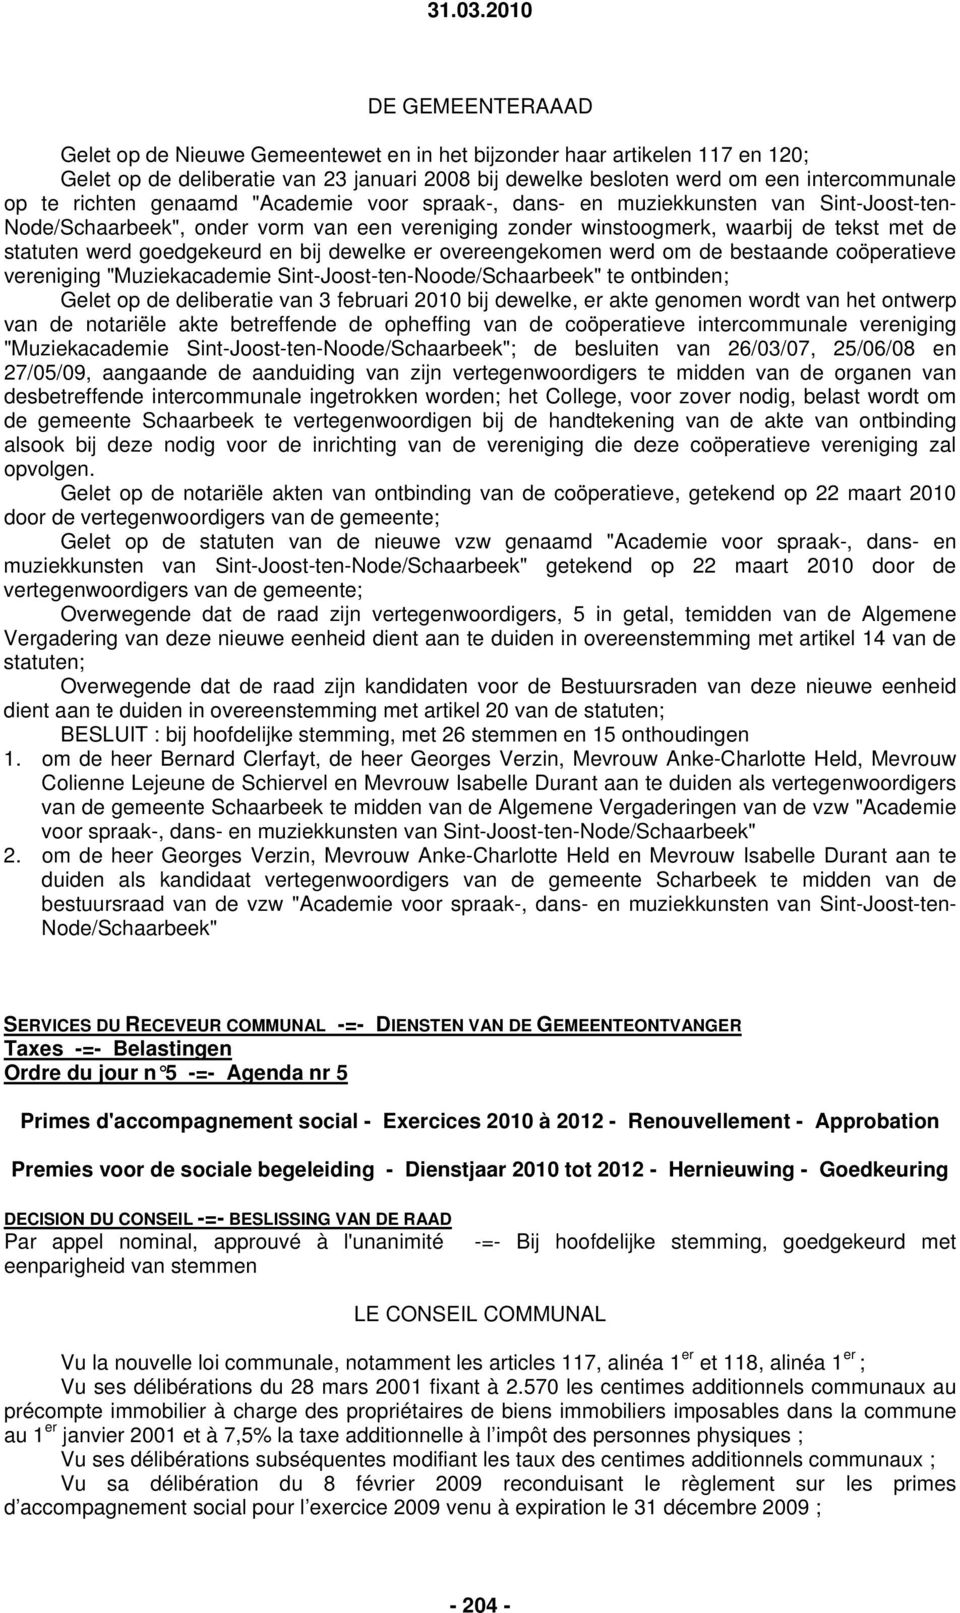 goedgekeurd en bij dewelke er overeengekomen werd om de bestaande coöperatieve vereniging "Muziekacademie Sint-Joost-ten-Noode/Schaarbeek" te ontbinden; Gelet op de deliberatie van 3 februari 2010